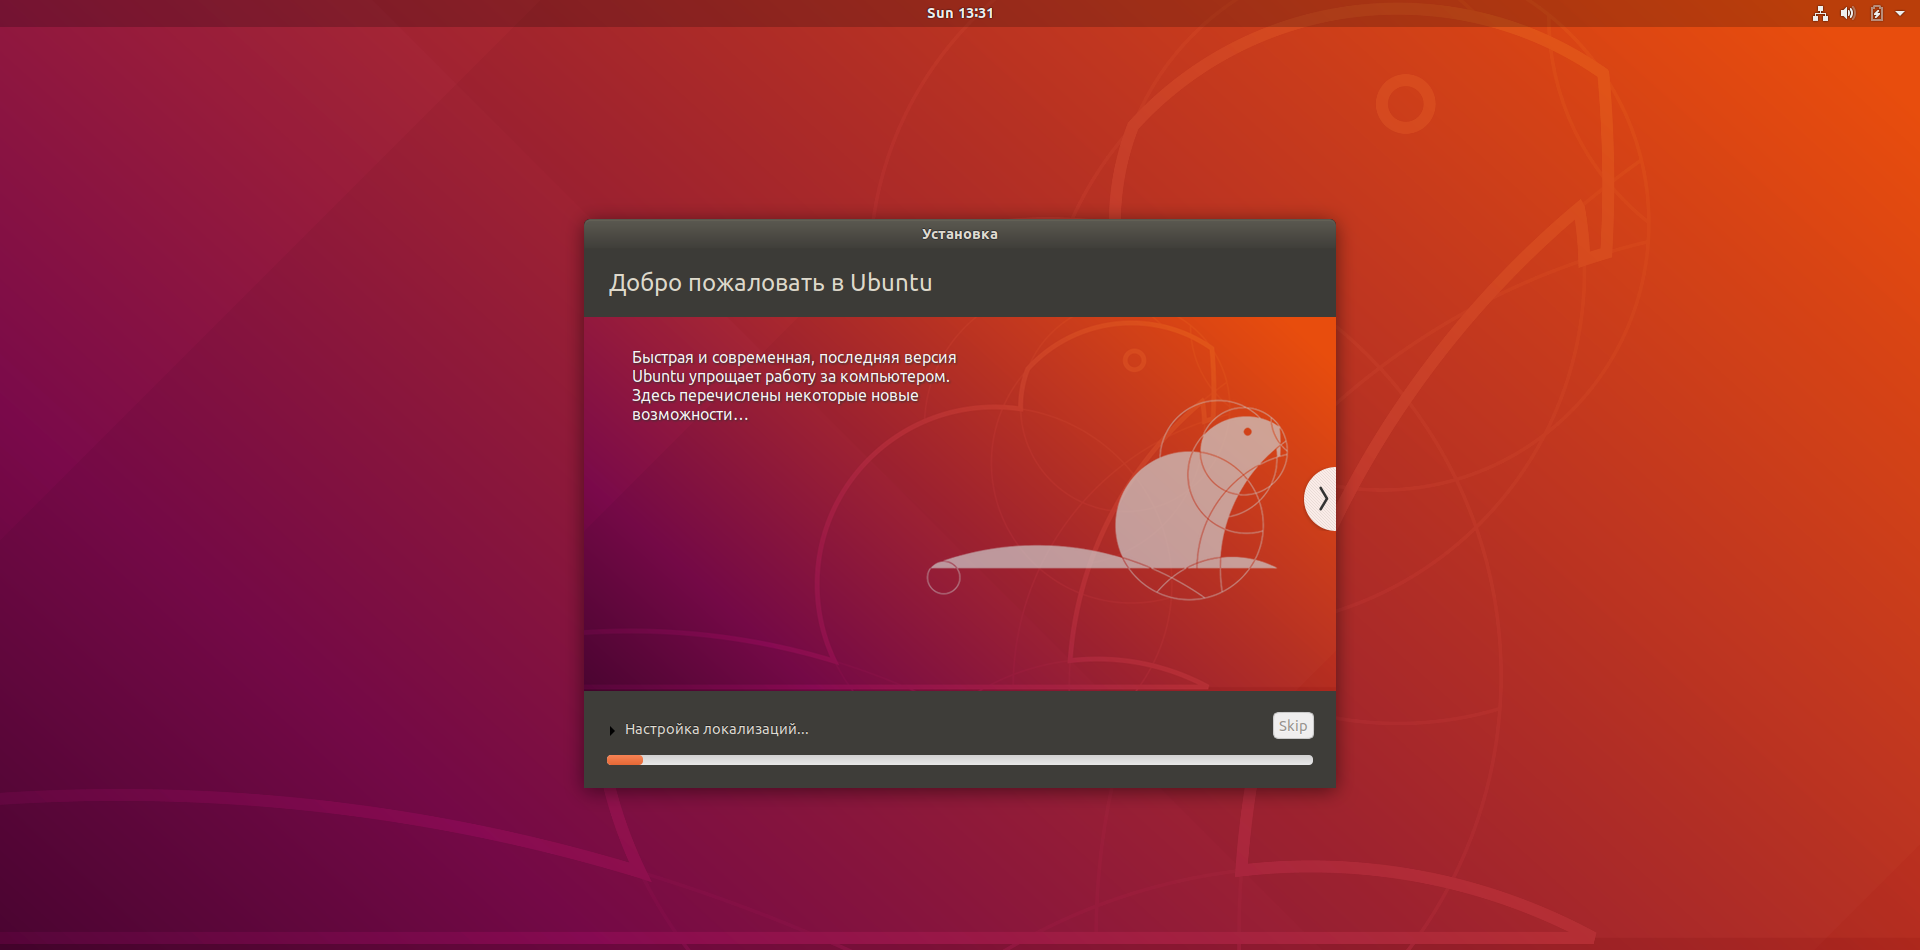 Как установить vmware workstation player в ubuntu 20.04